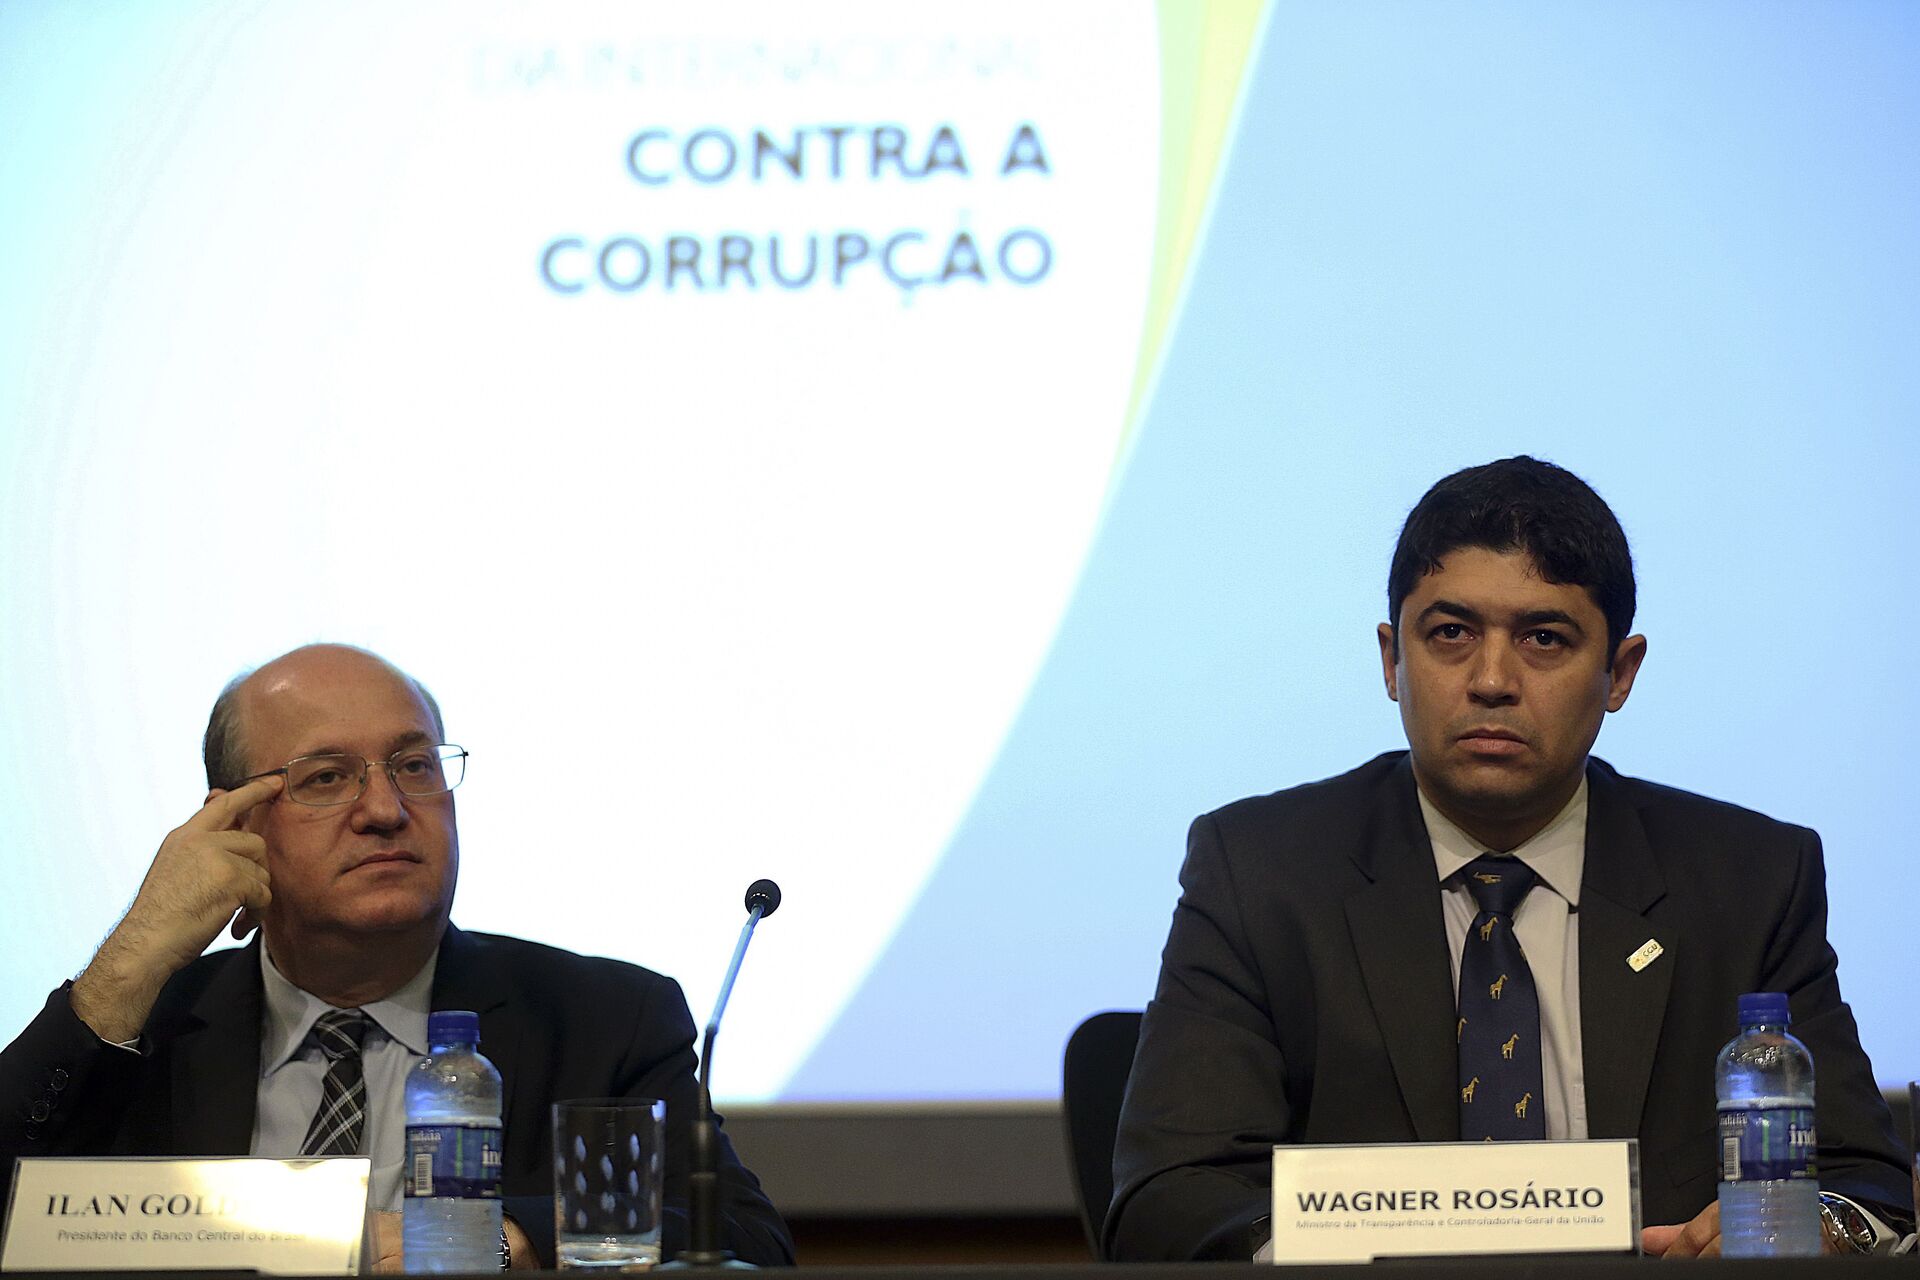 Caso Covaxin: contrato é cancelado mesmo sem CGU detectar irregularidades em auditoria  - Sputnik Brasil, 1920, 29.07.2021